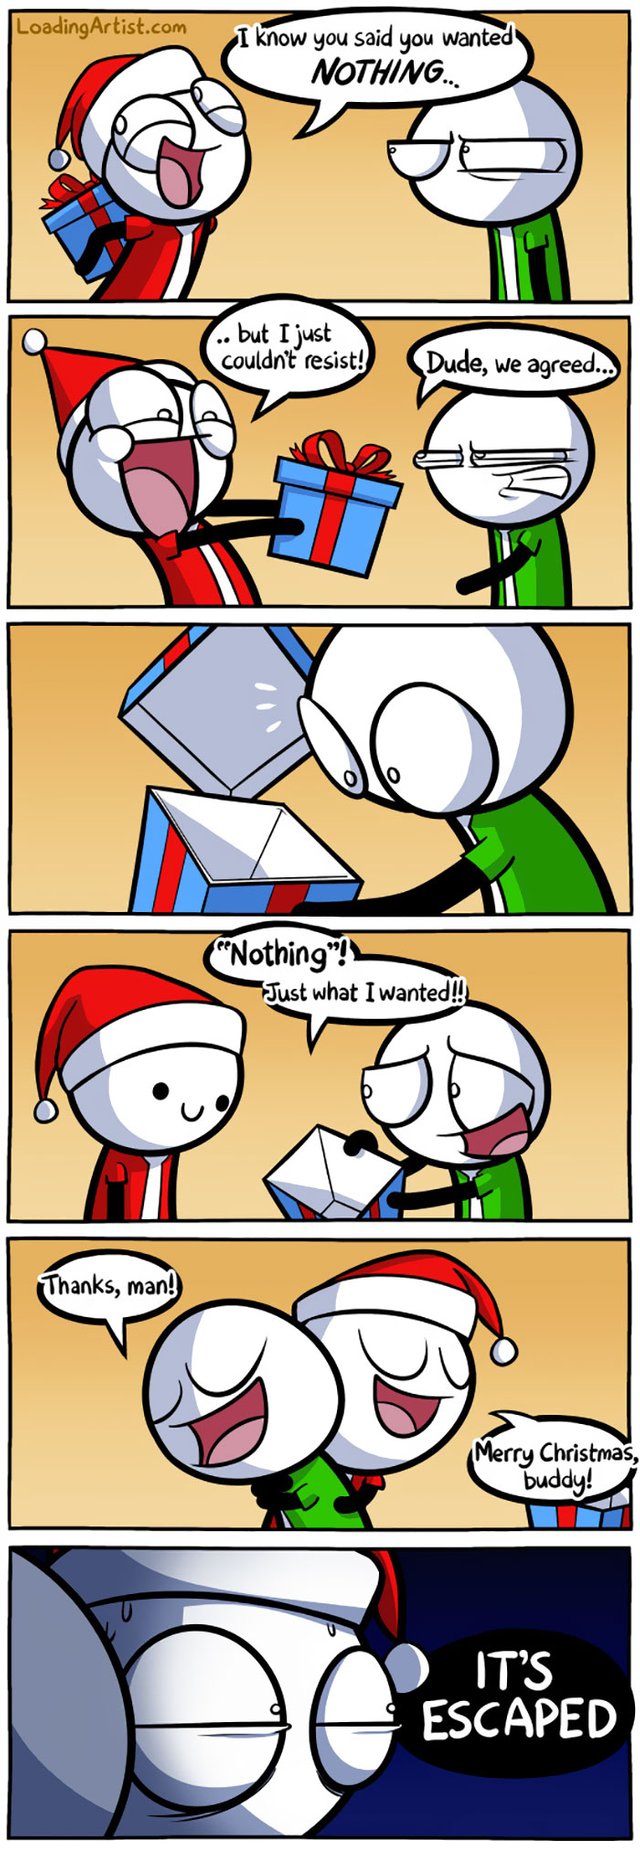 funny-christmas-comics-8-58467de32d51c__700.jpg